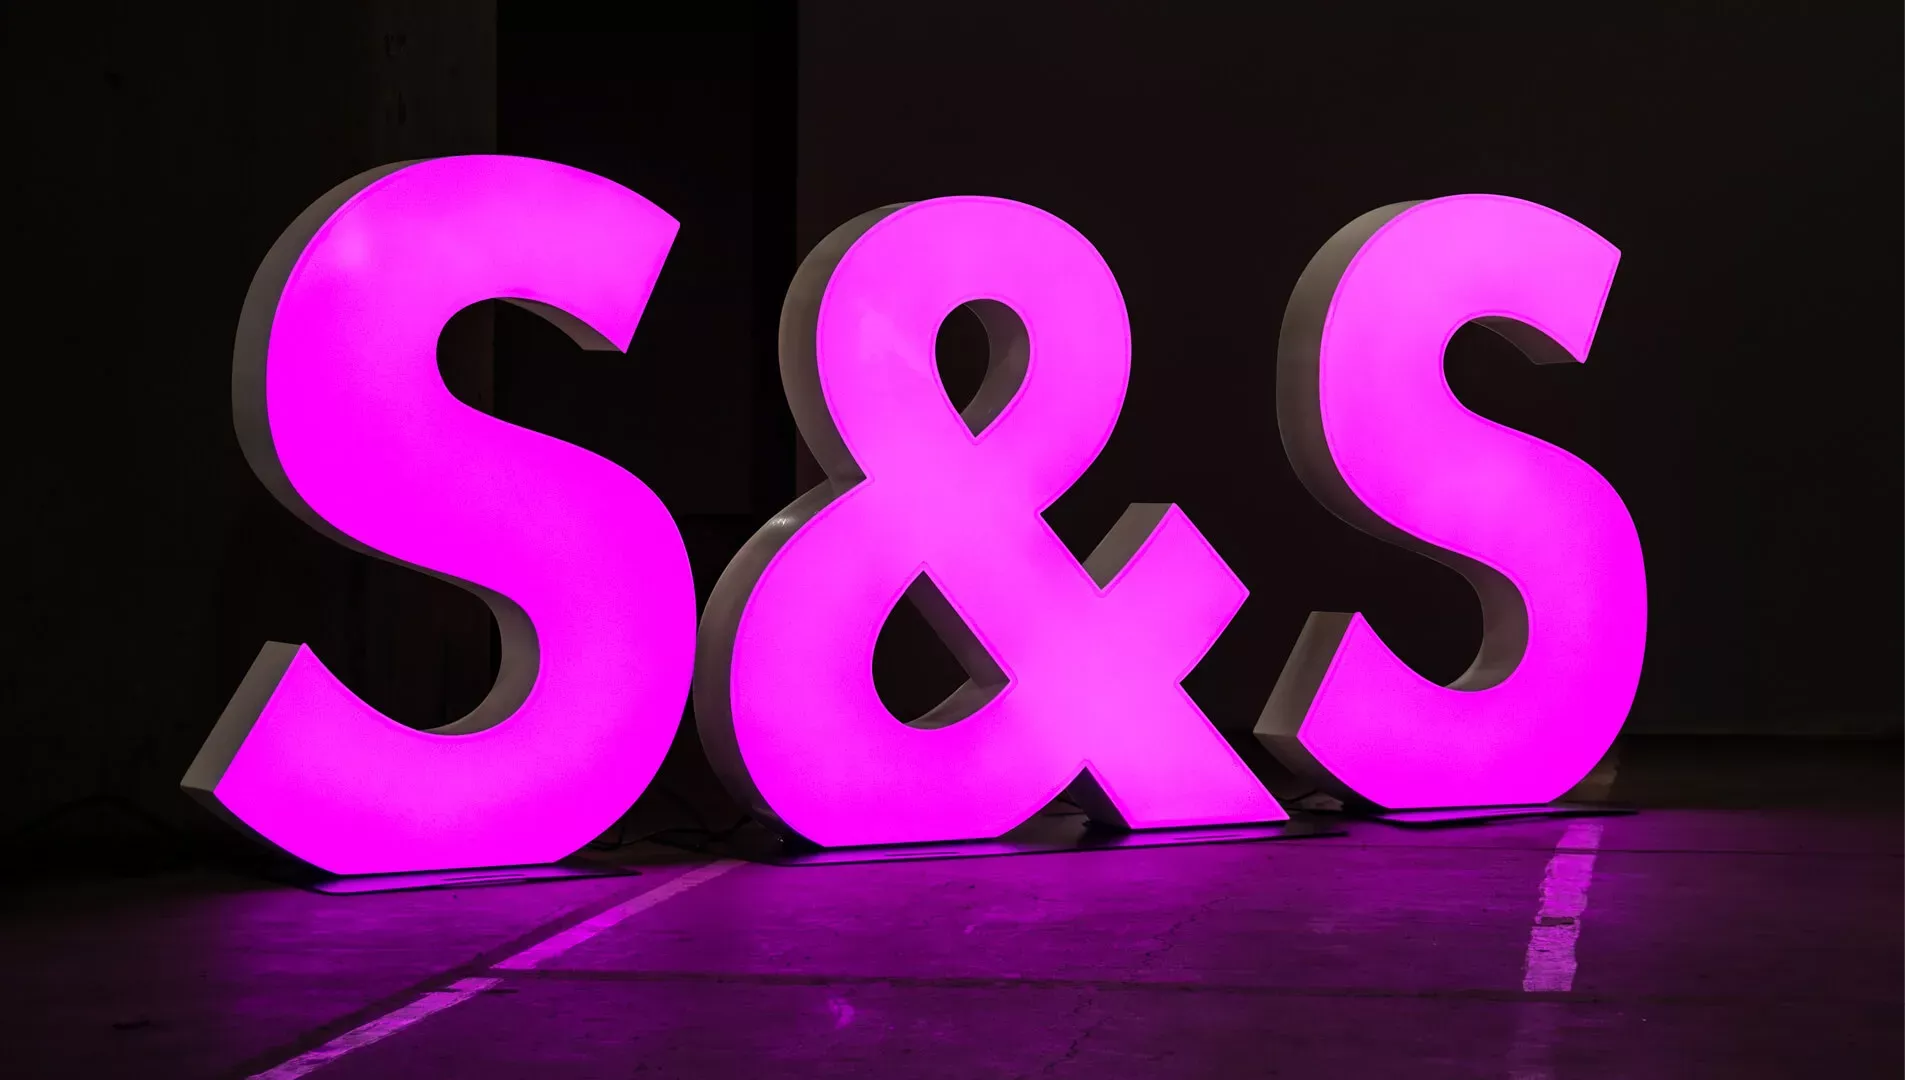 Large format letters - Large-format letters and symbol, purple in color